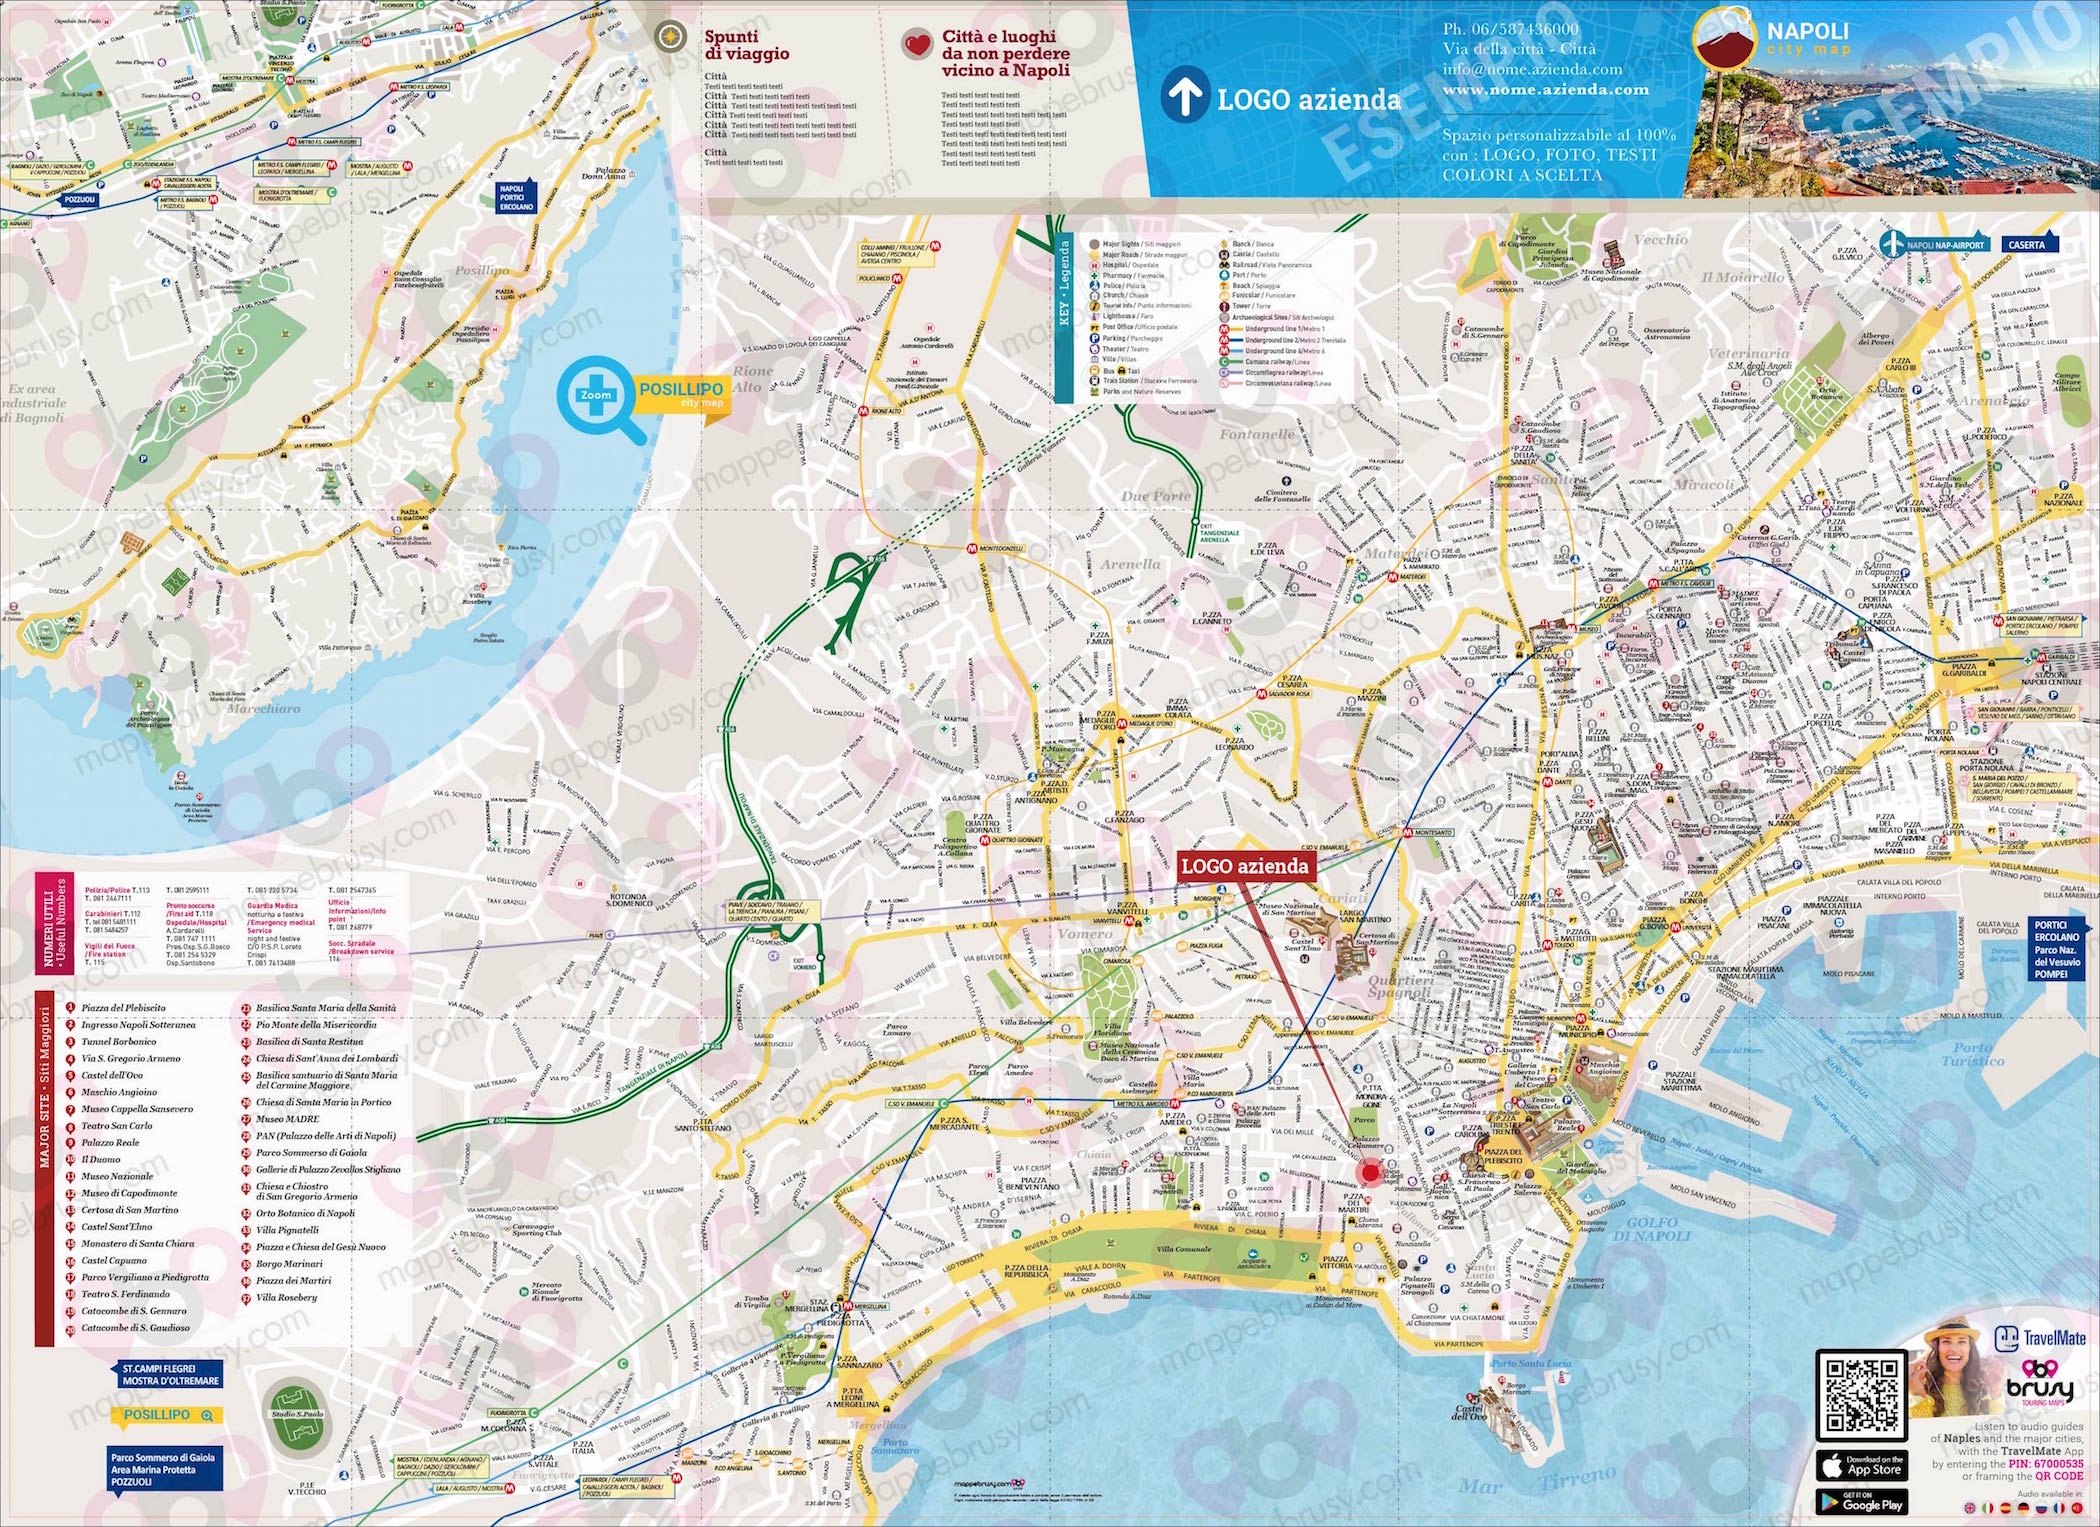 Mappa di Napoli - Naples city map - mappa Napoli - mappa personalizzata di Napoli